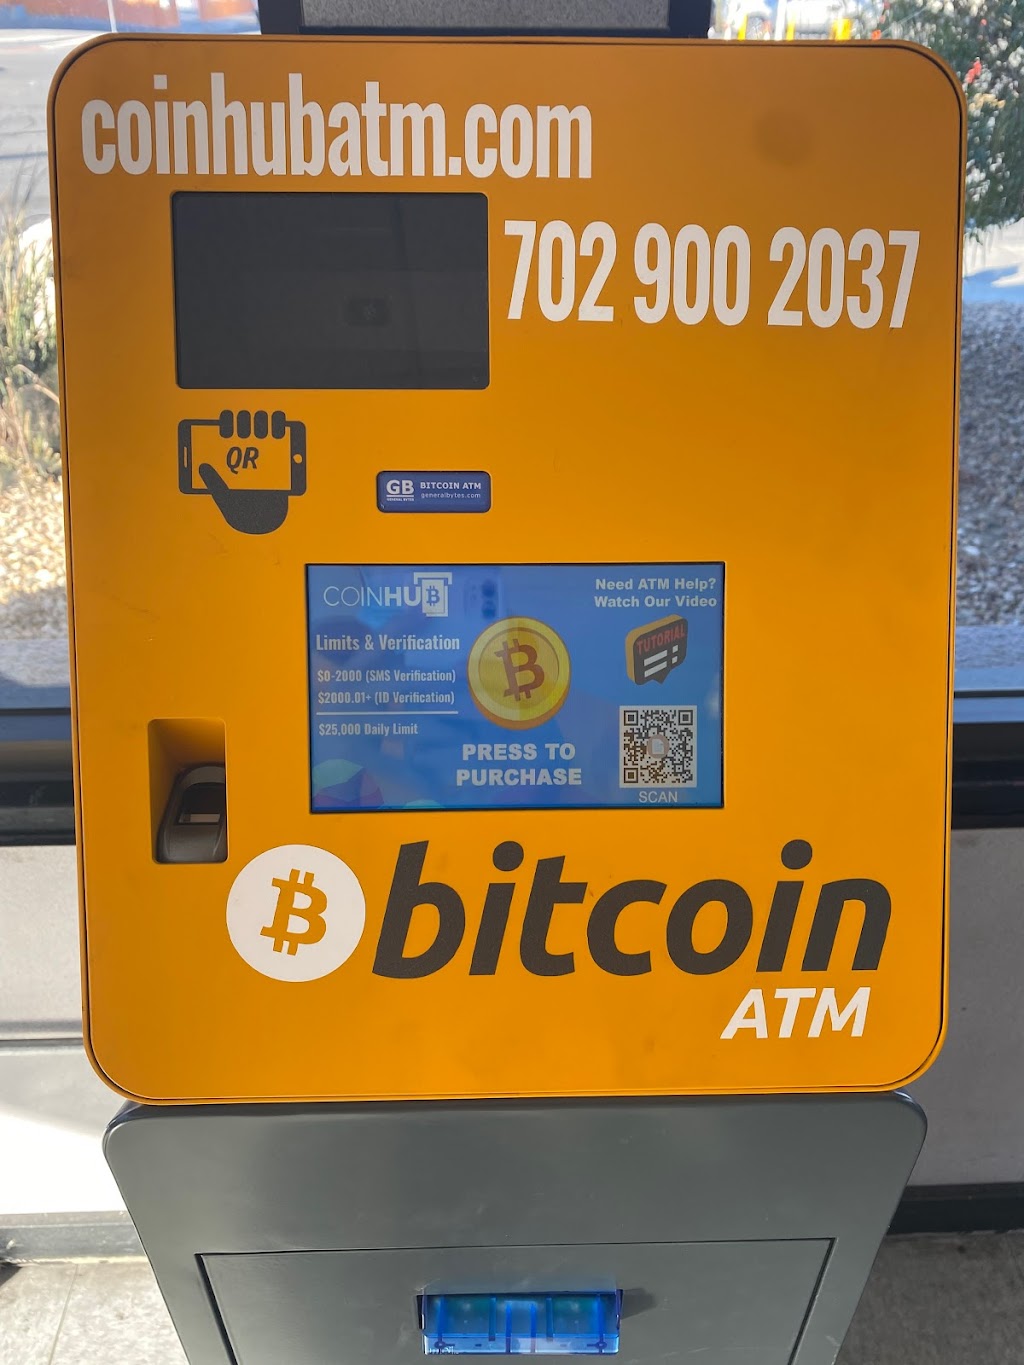 Bitcoin ATM Perth Amboy - Coinhub | 479 Krochmally Ave, Perth Amboy, NJ 08861 | Phone: (702) 900-2037